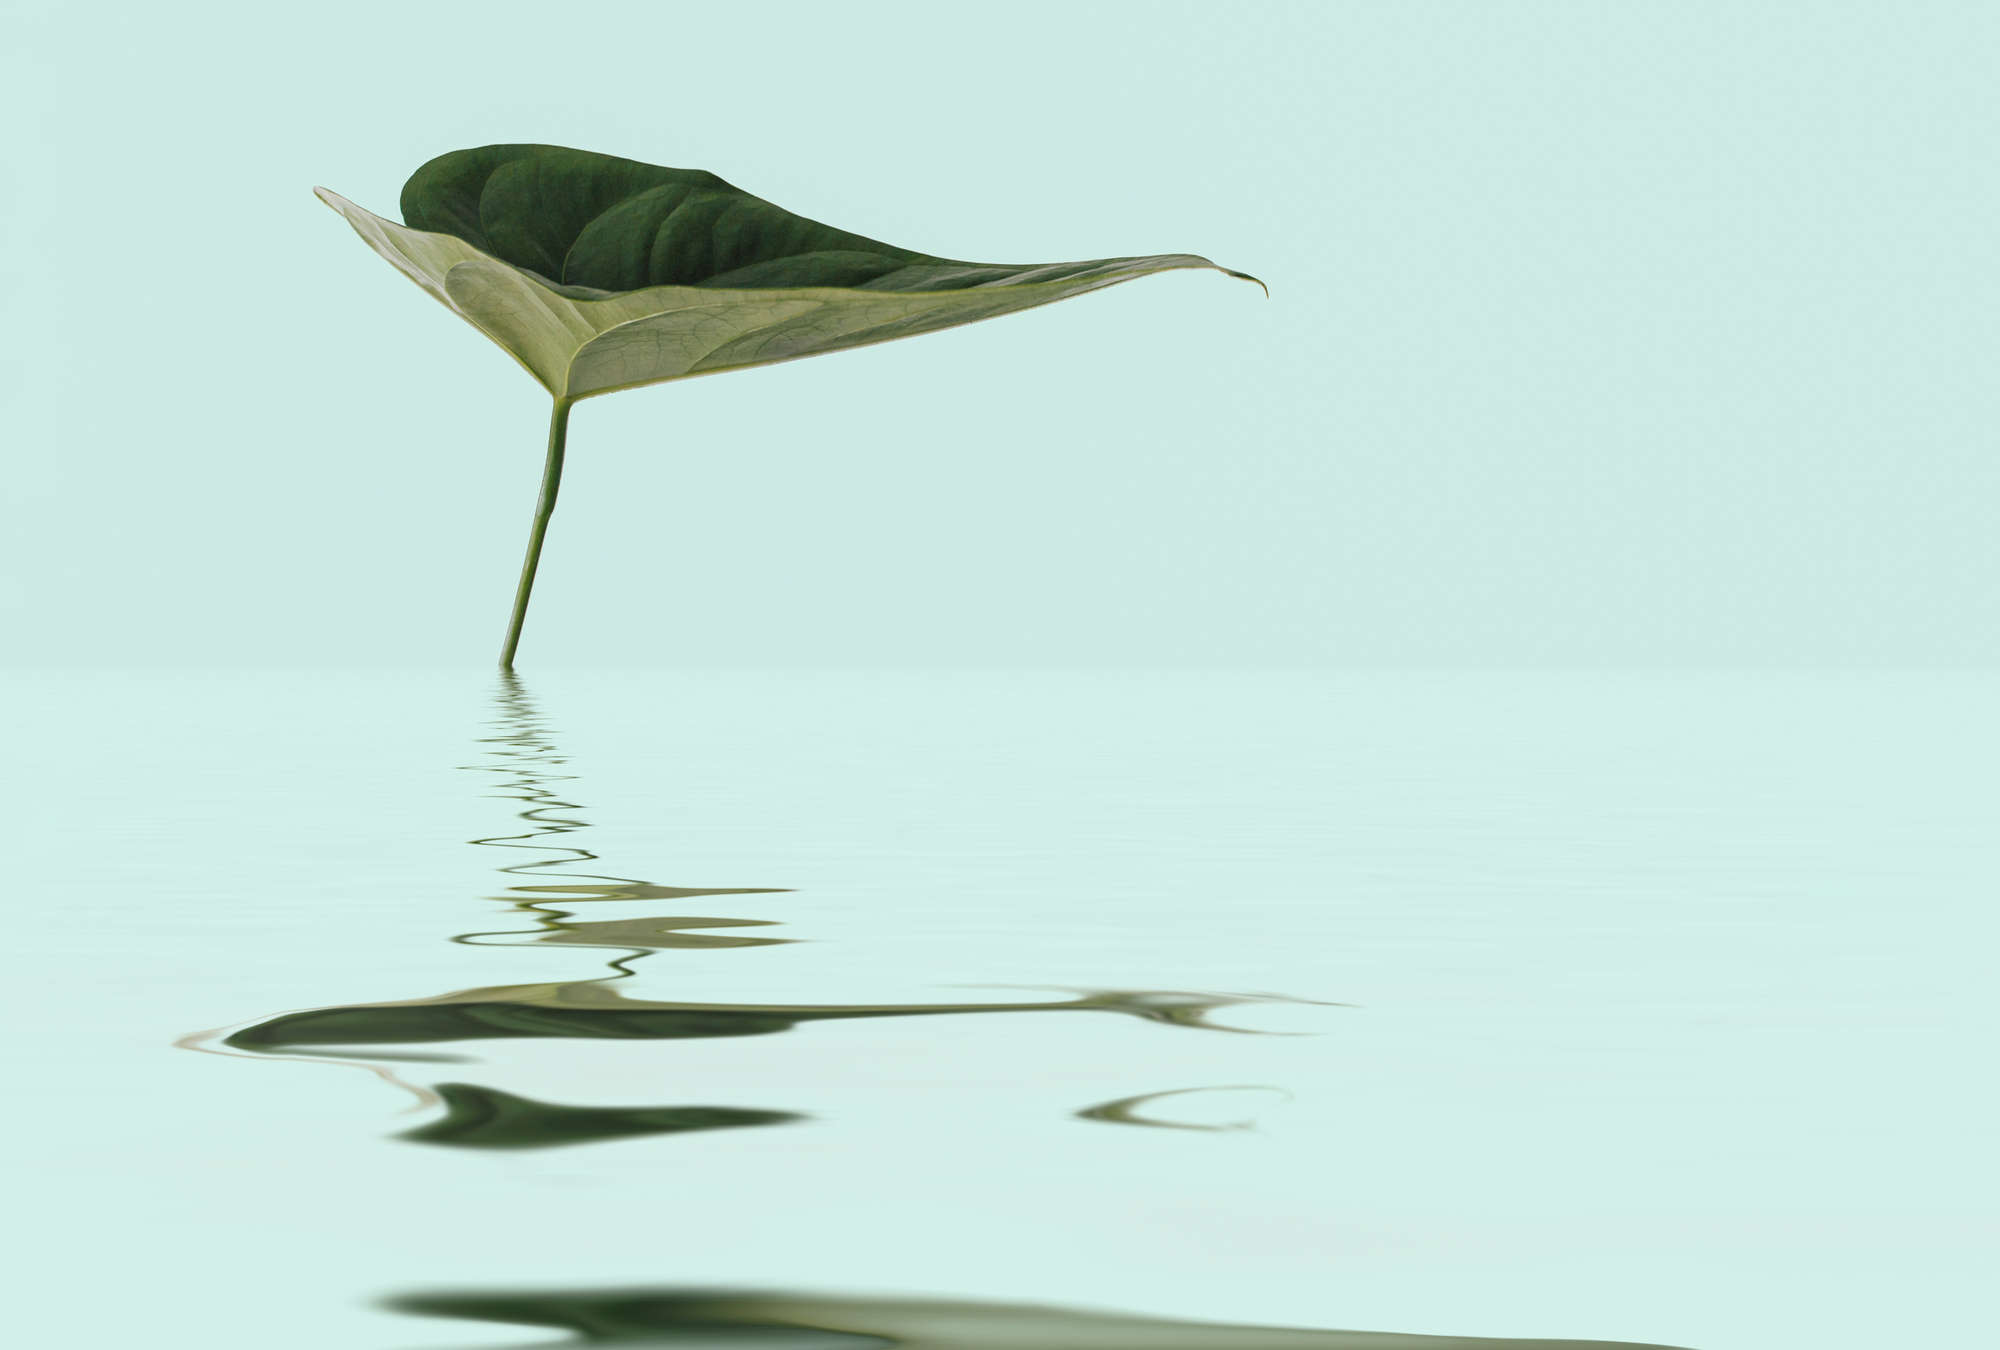             Zen Fototapete mit Blatt im Wasser für Wellness Design
        